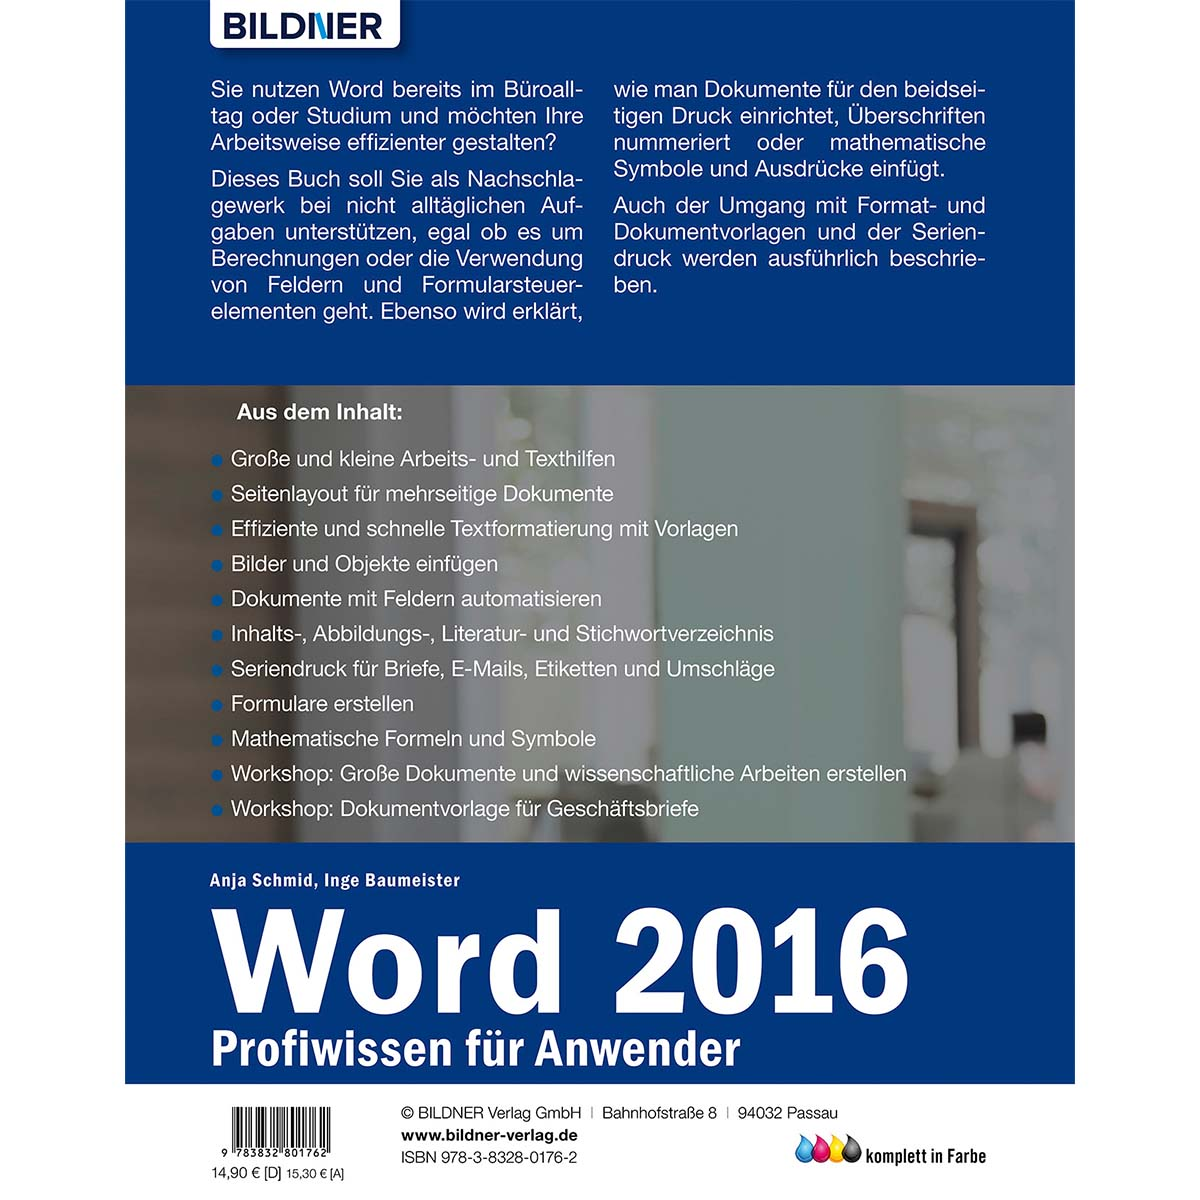 Anwender - Word 2016 Profiwissen für